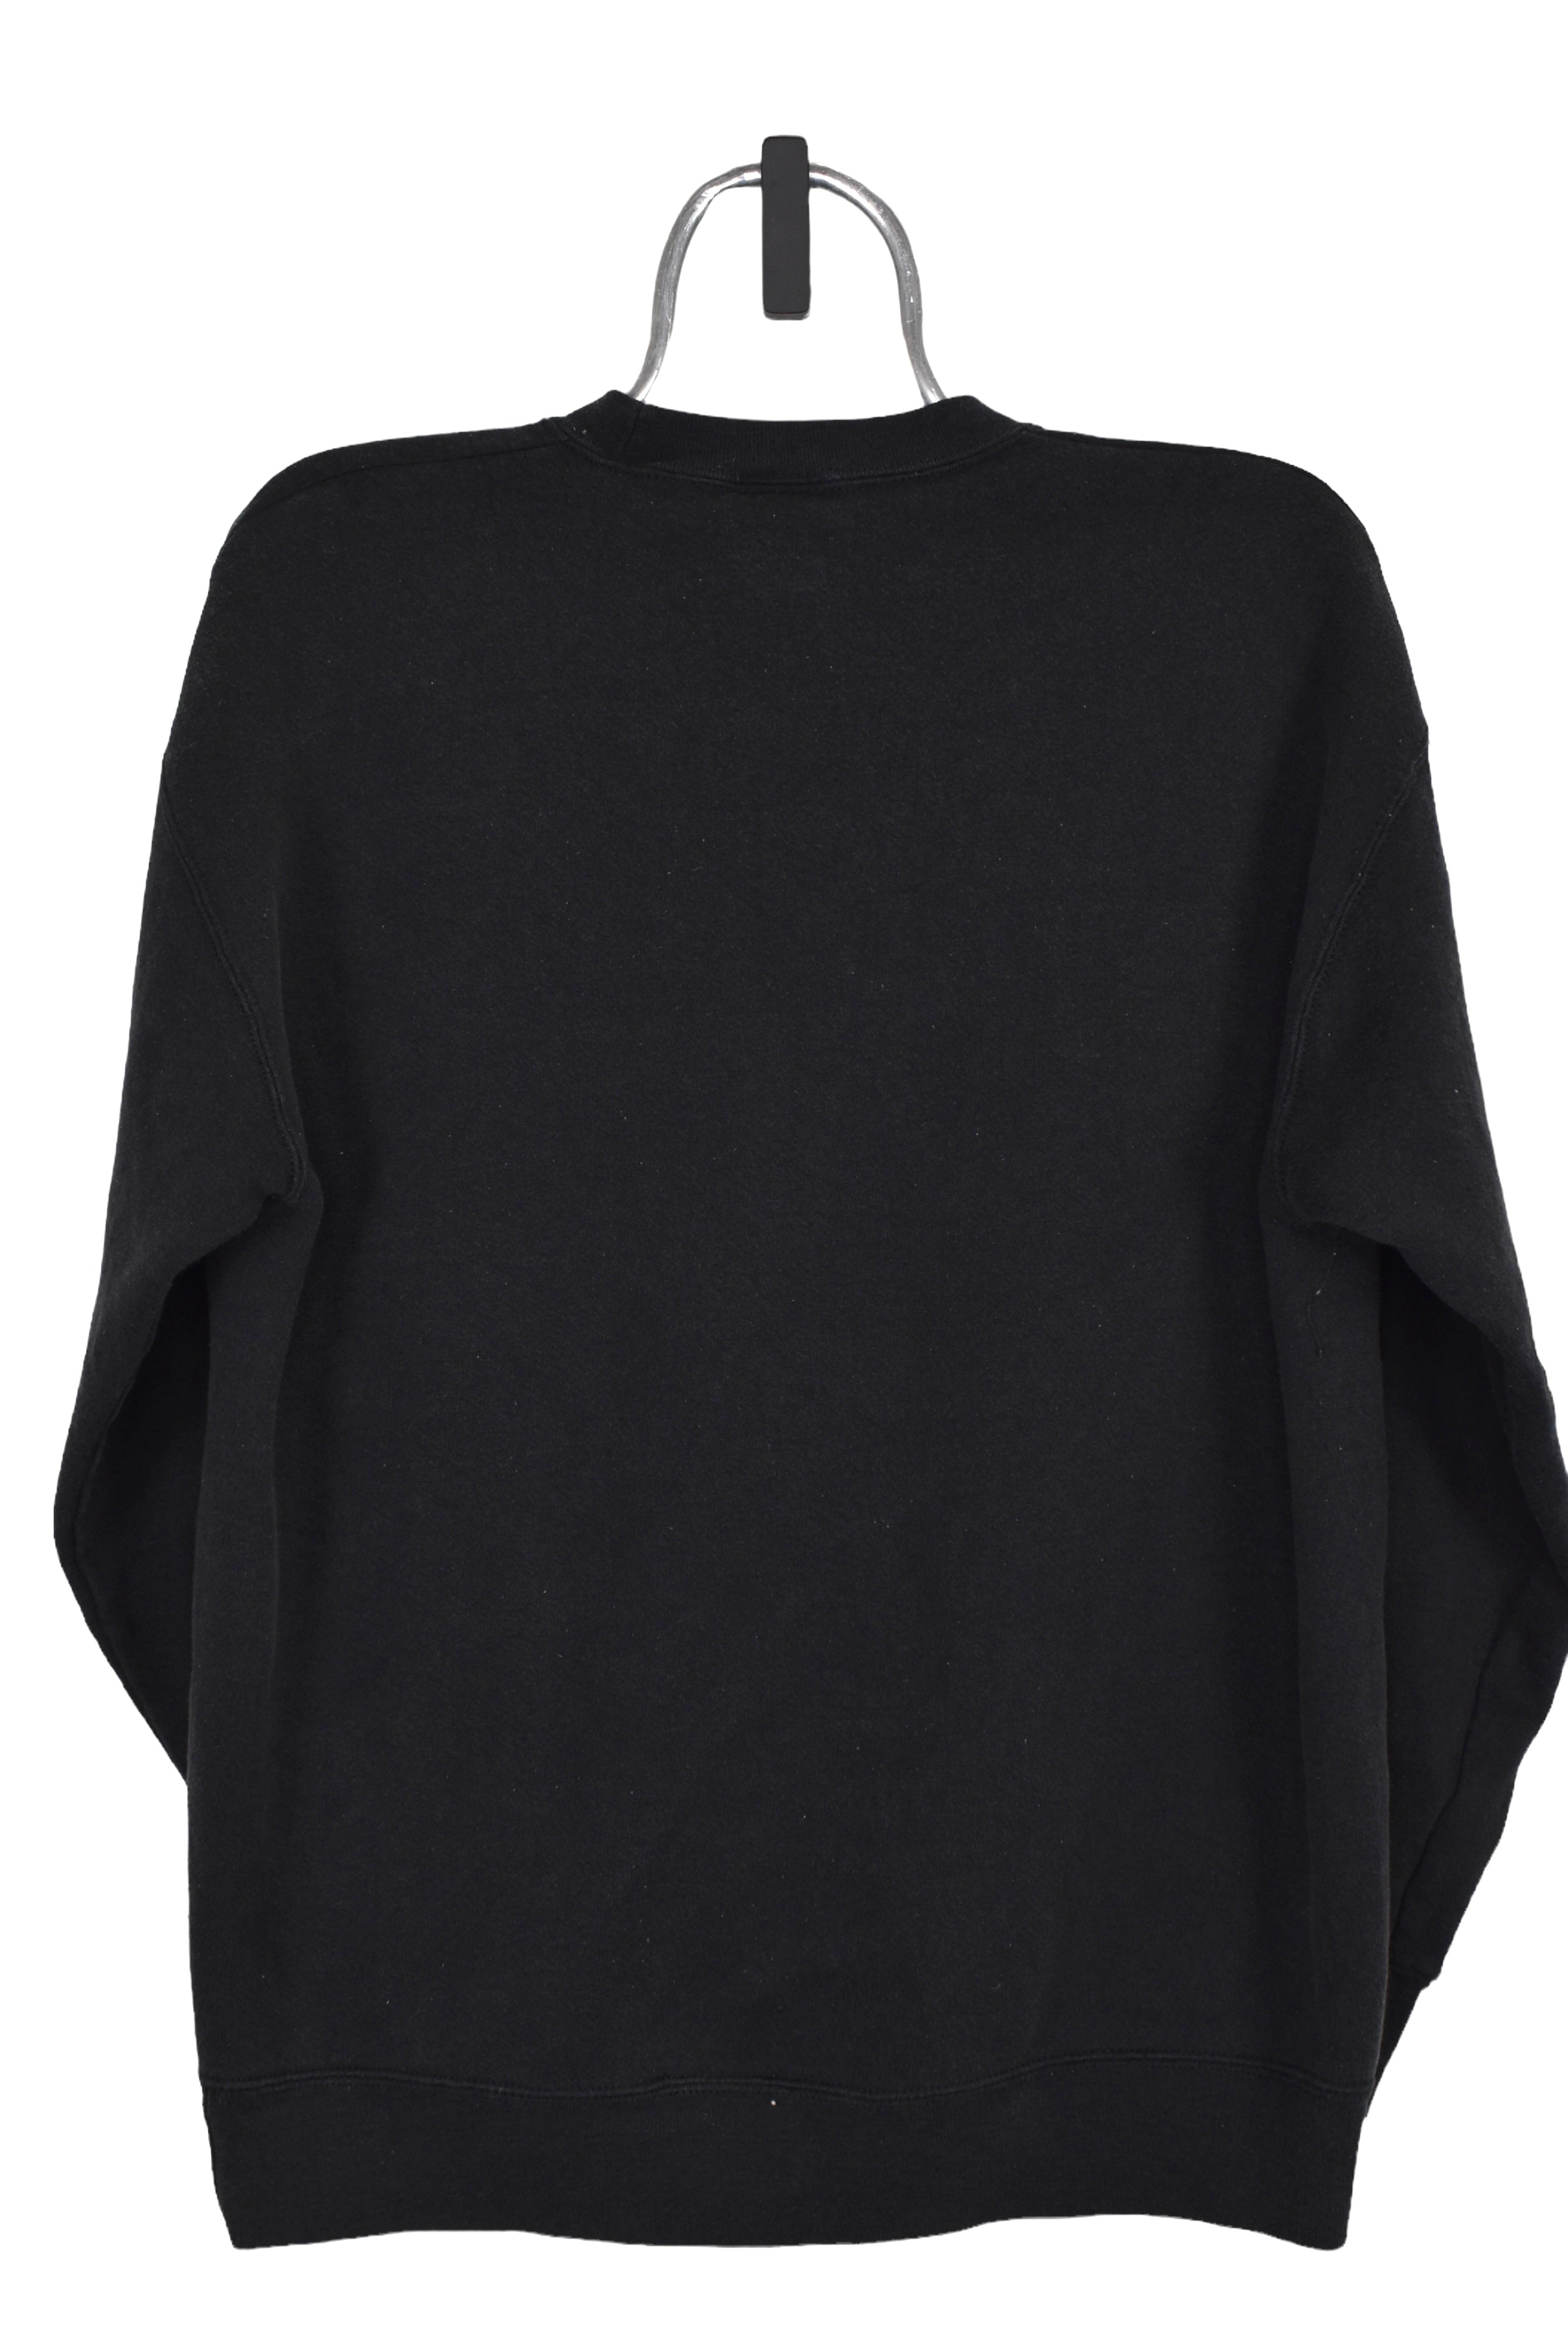 Vintage Oakland Raiders sweatshirt (L), black NFL embroidered crewneck